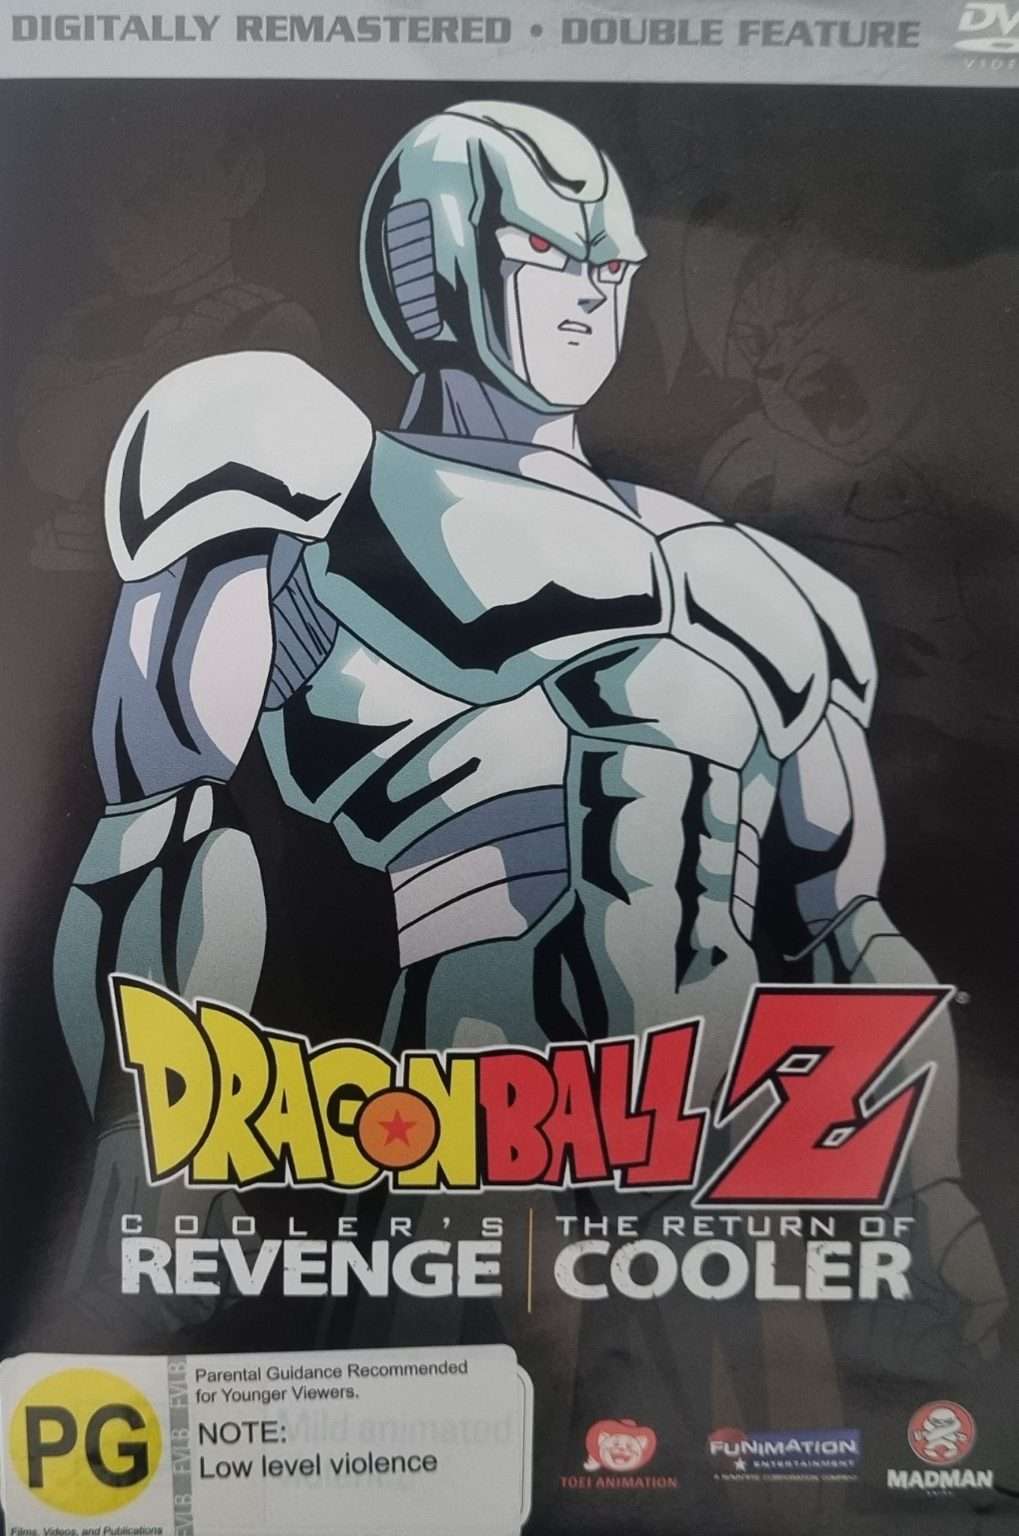 Dragon Ball Z: Cooler's Revenge / The Return of Cooler